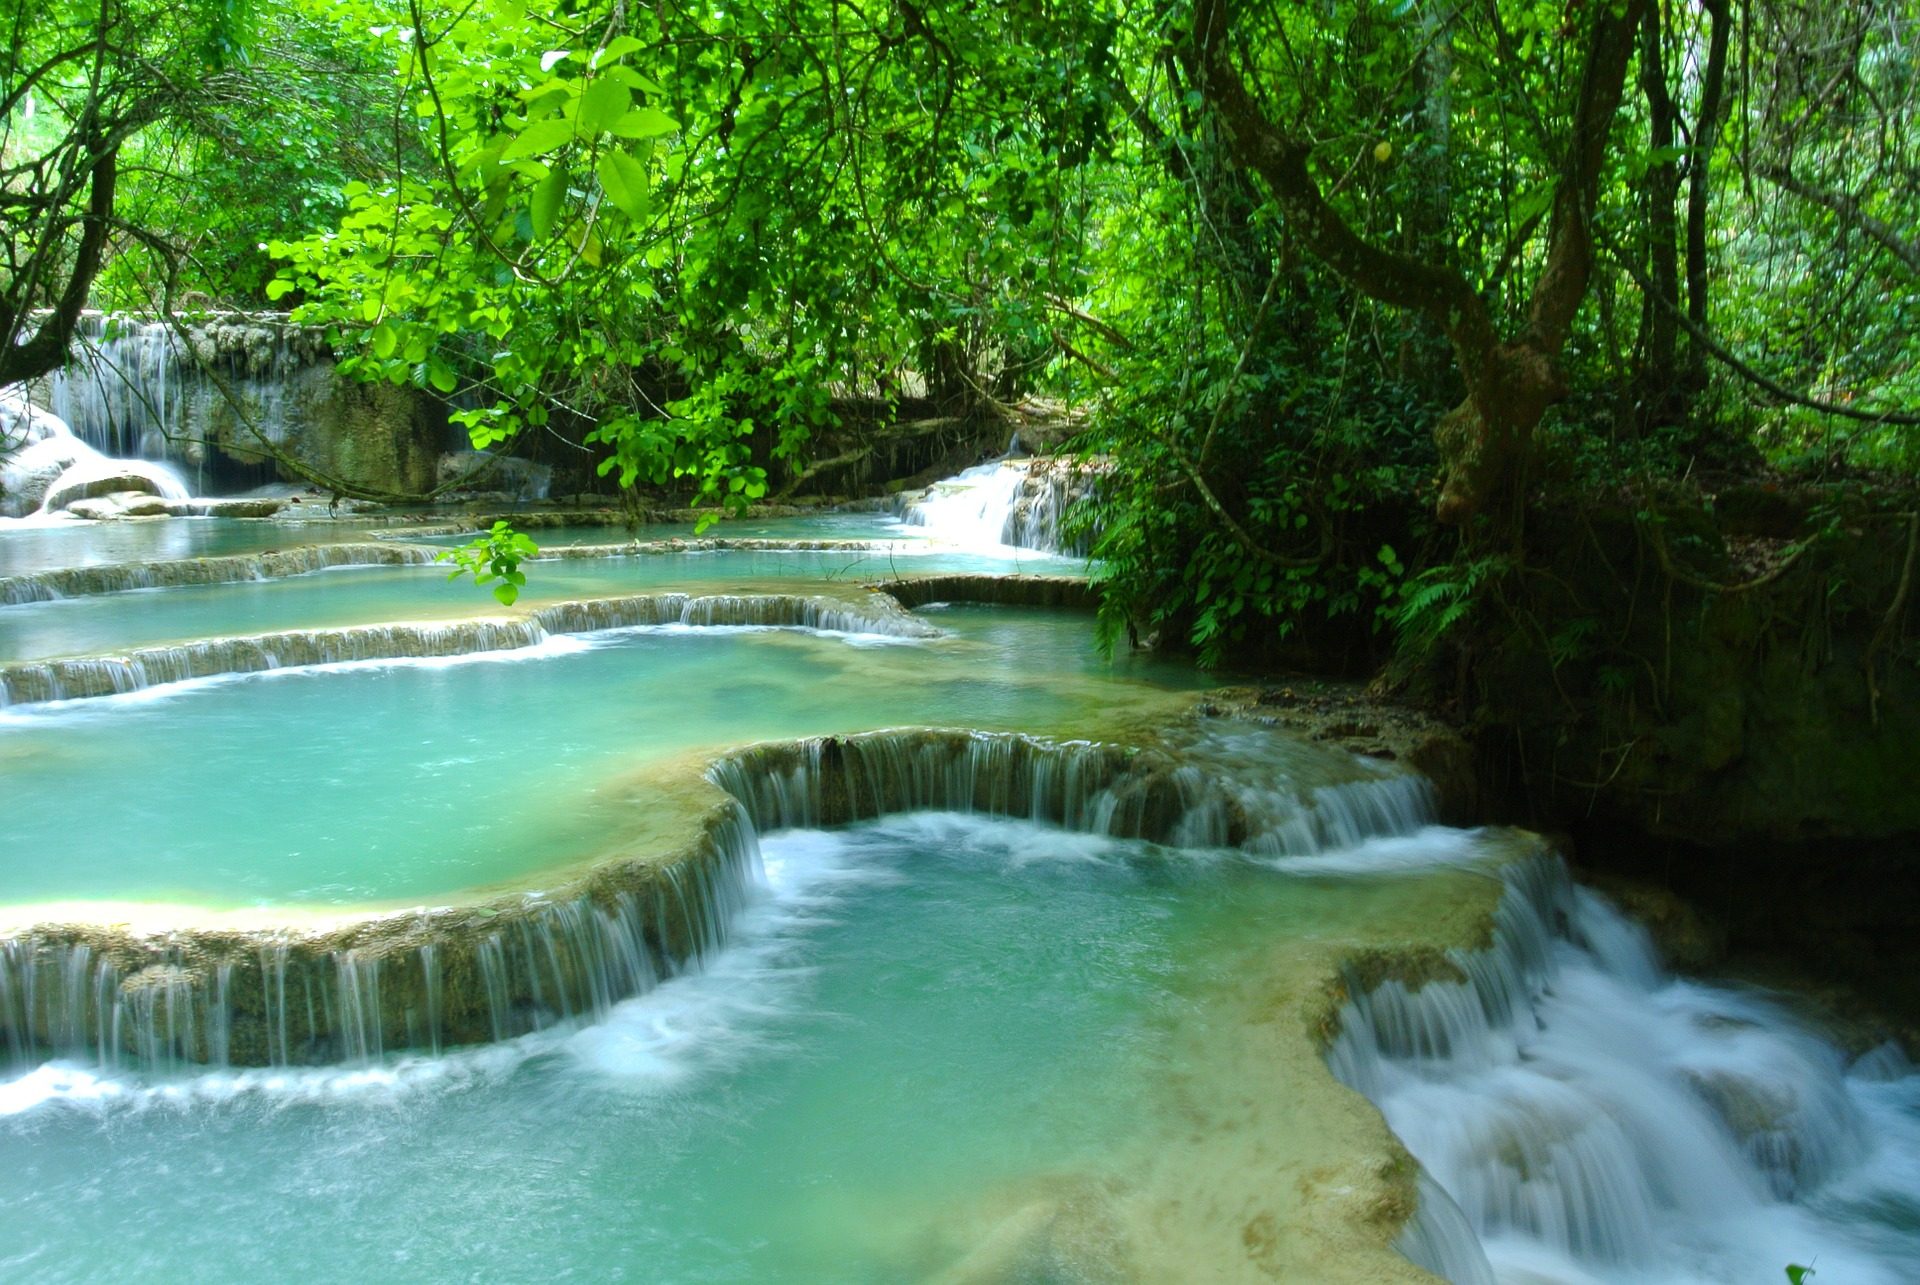 Turquoise water at Kuang Si Falls, Laos